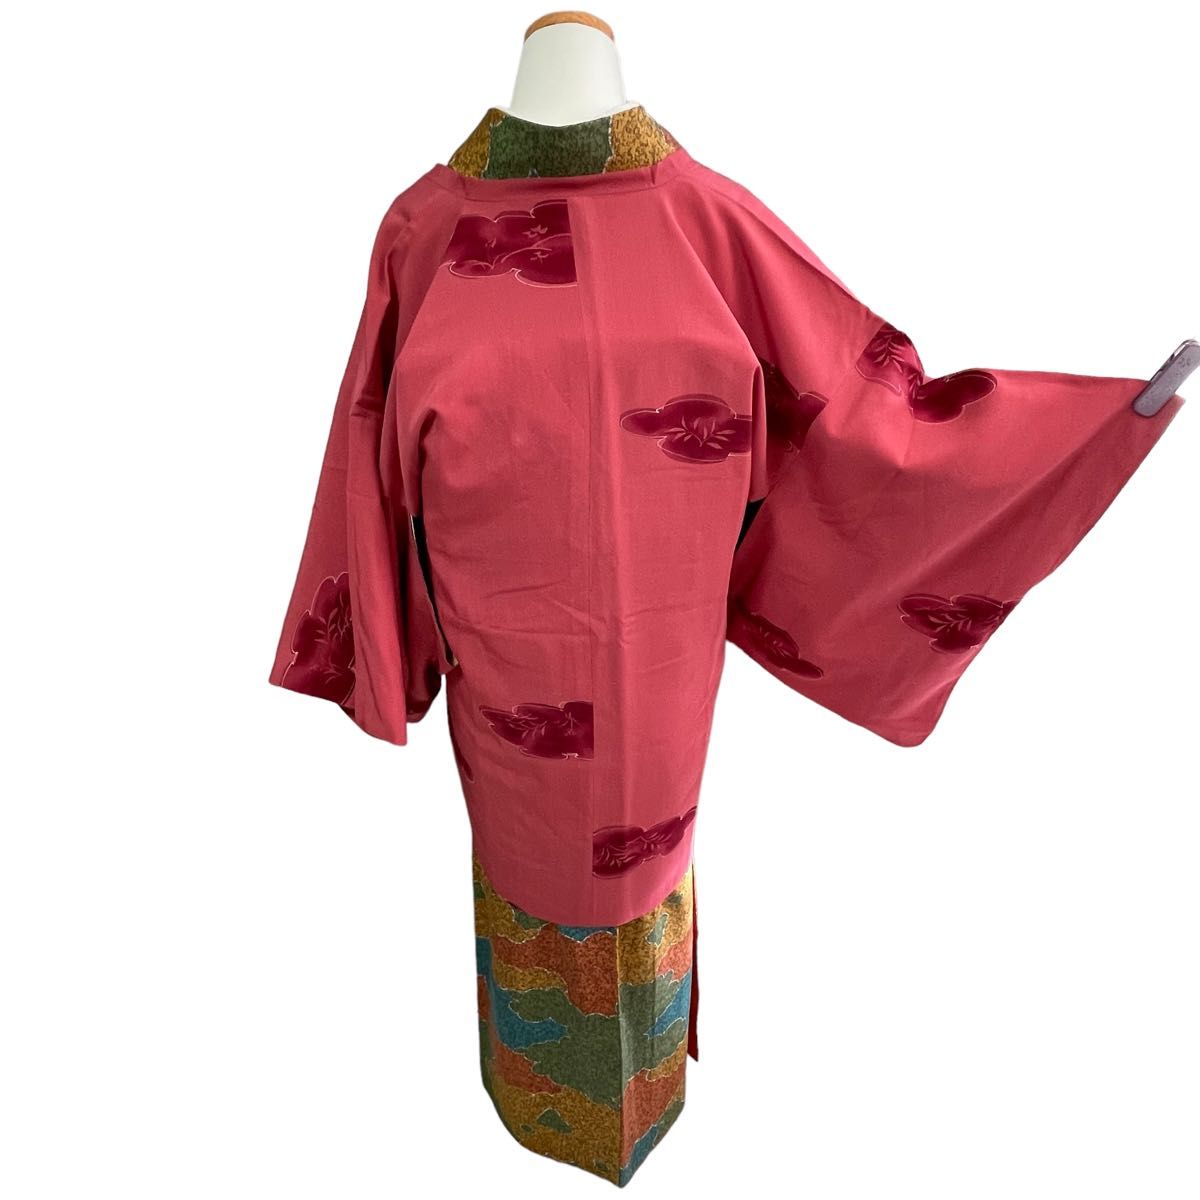 道行コート 和装コート 袷 ピンク 着物 裄65 小紋 に 冬着物 防寒 